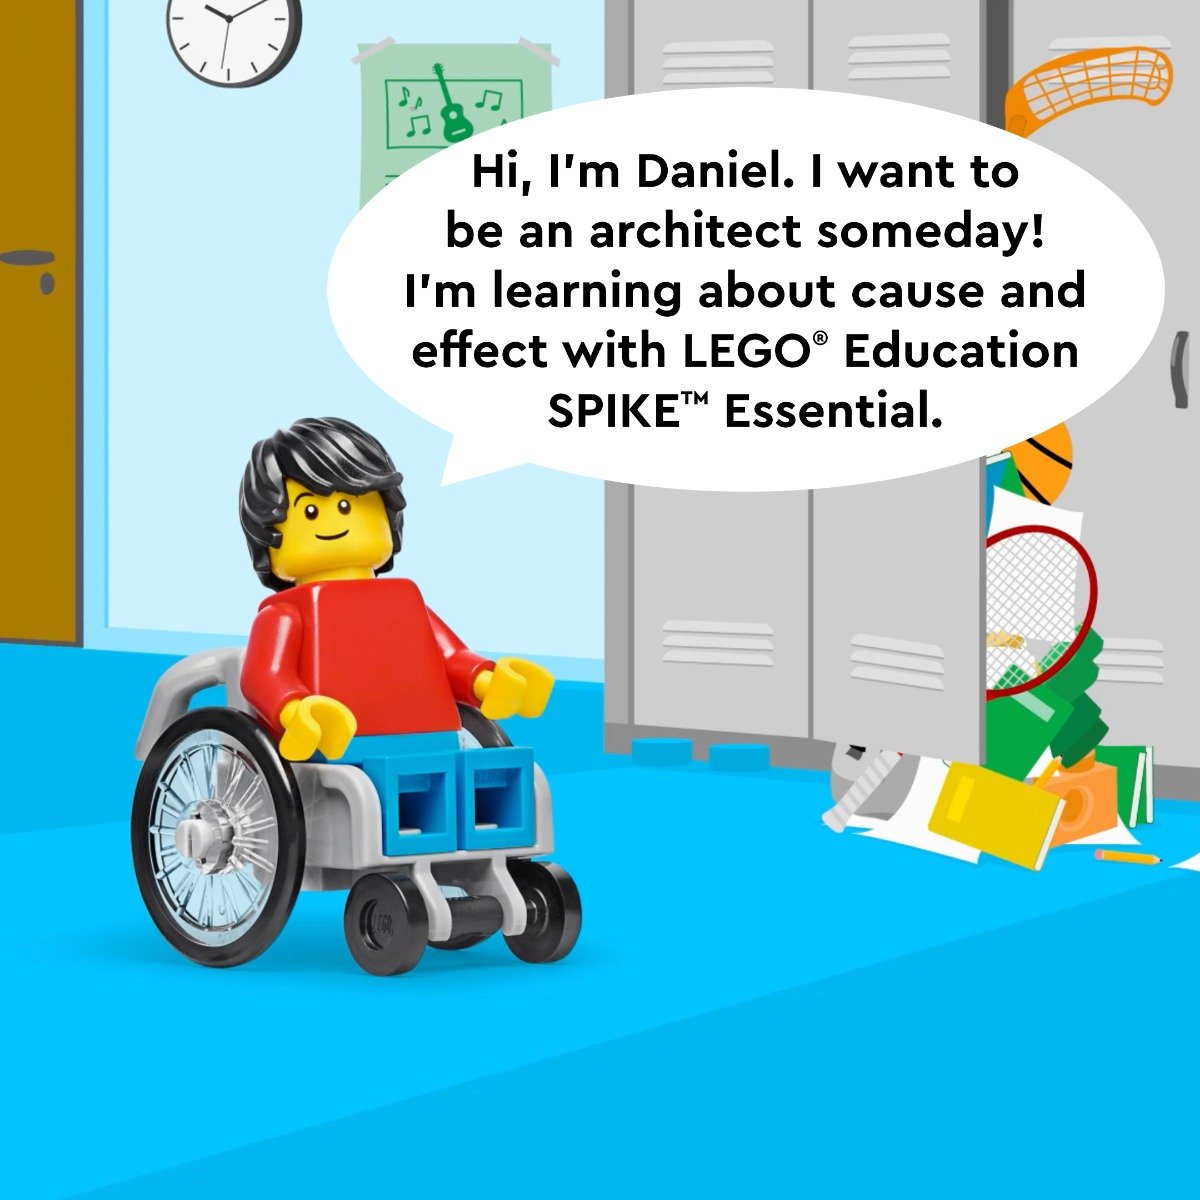 LEGO Education Spike Essential